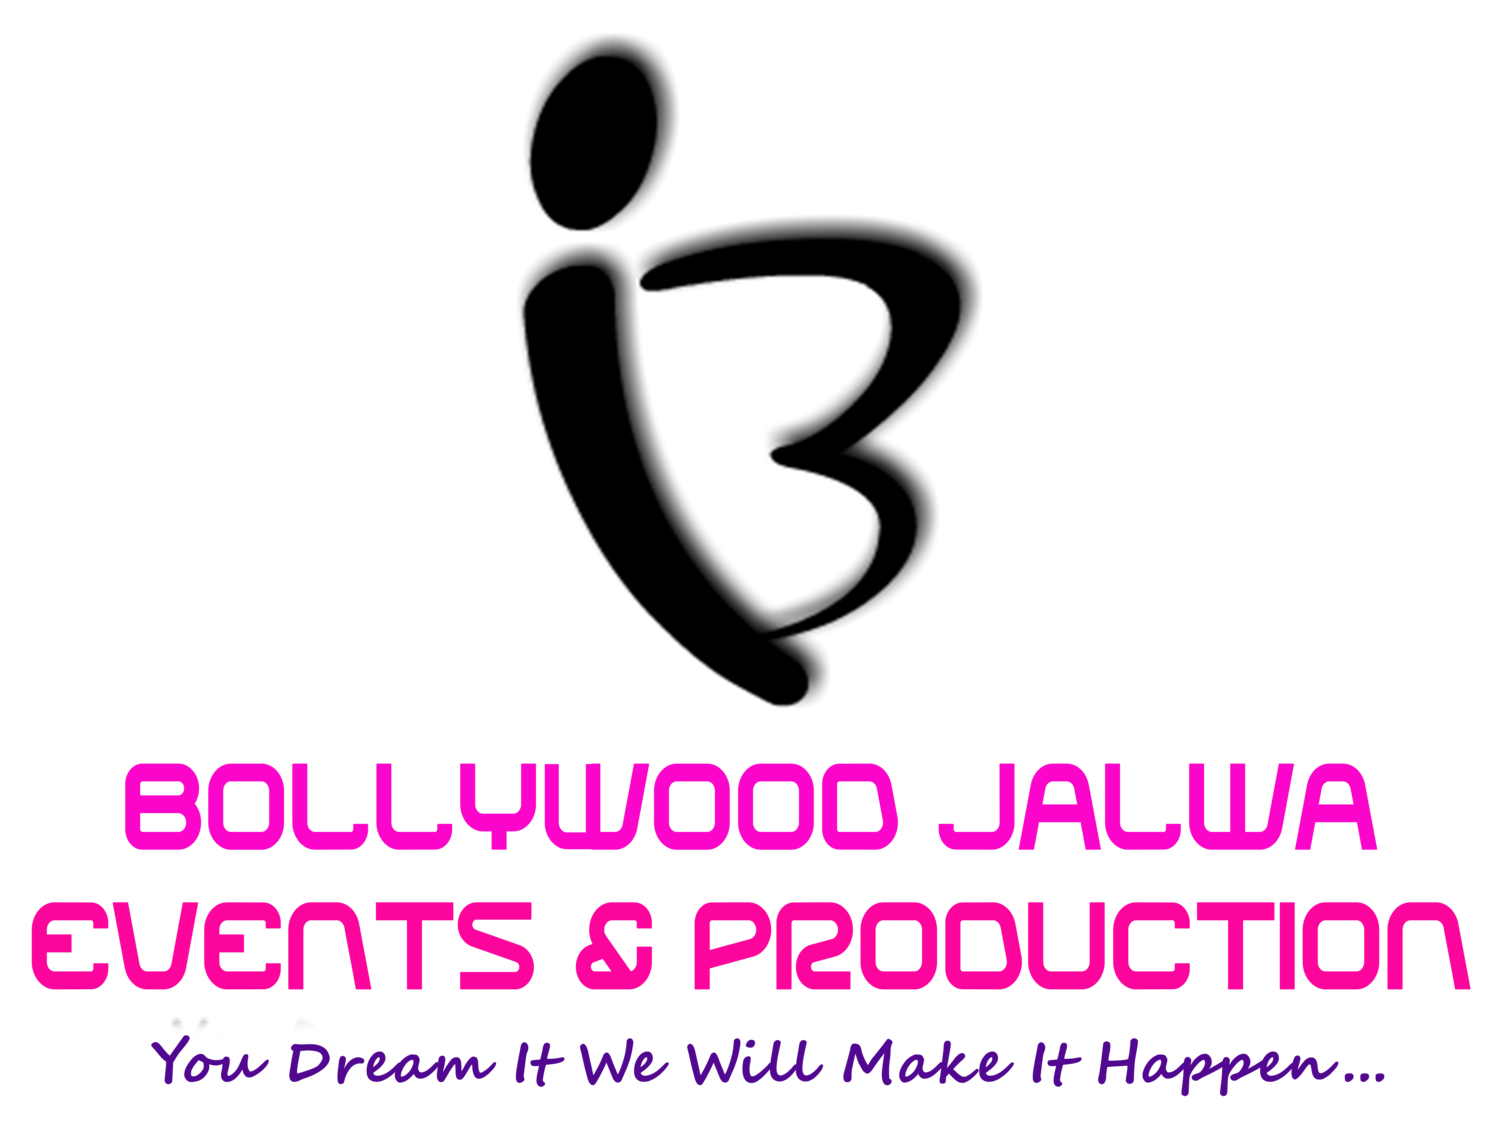 Bollywood Jalwa Events & Production Ireland